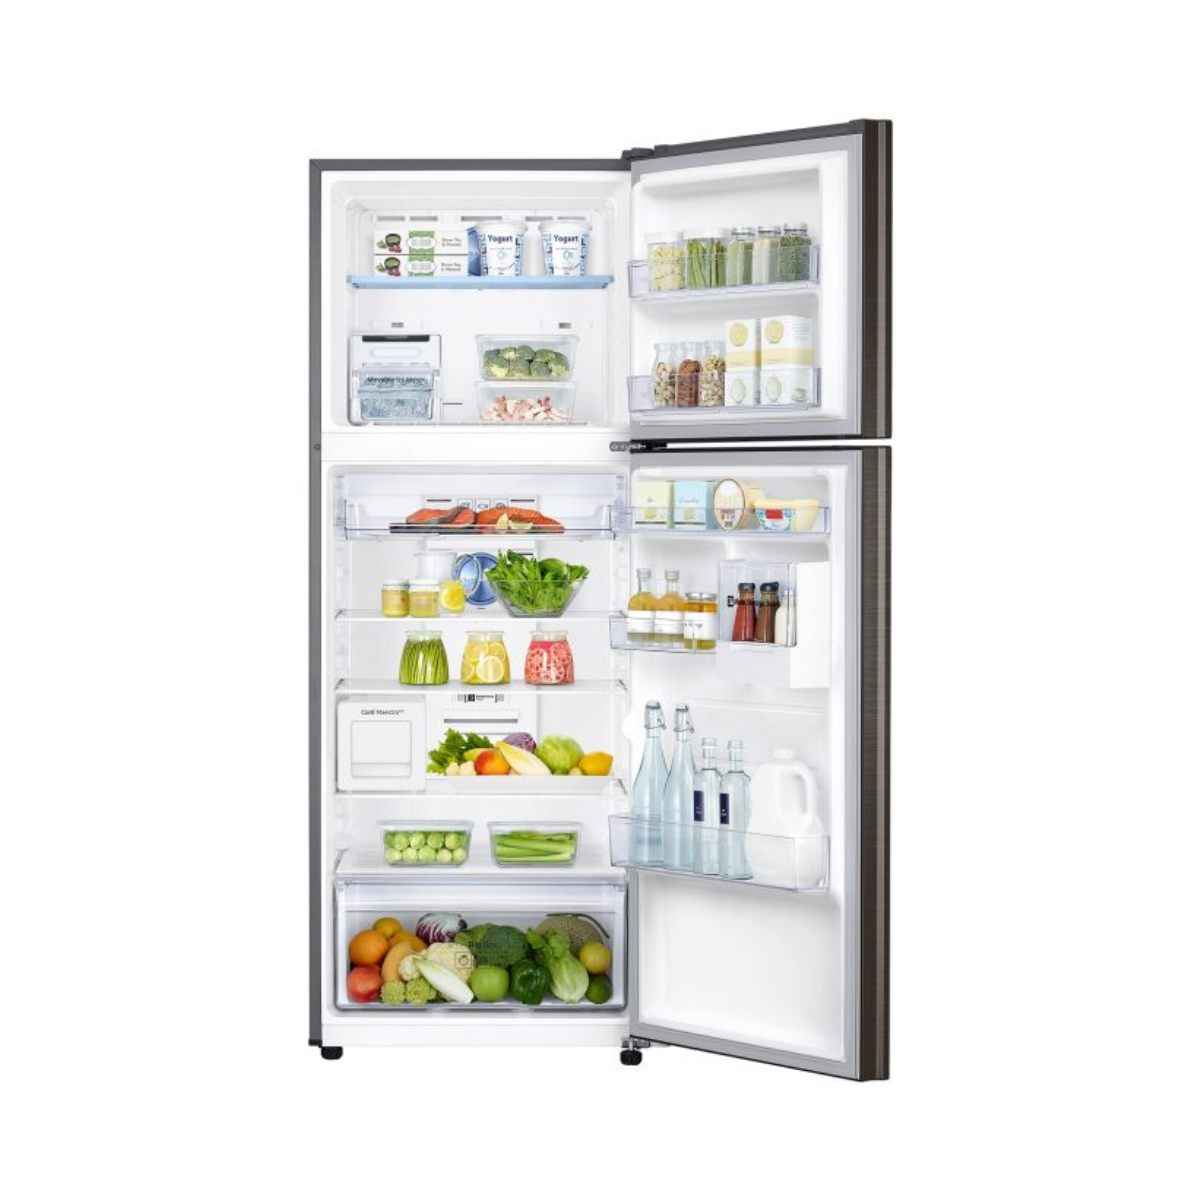 Samsung 407L 2 Star Curd Mastro Refrigerator